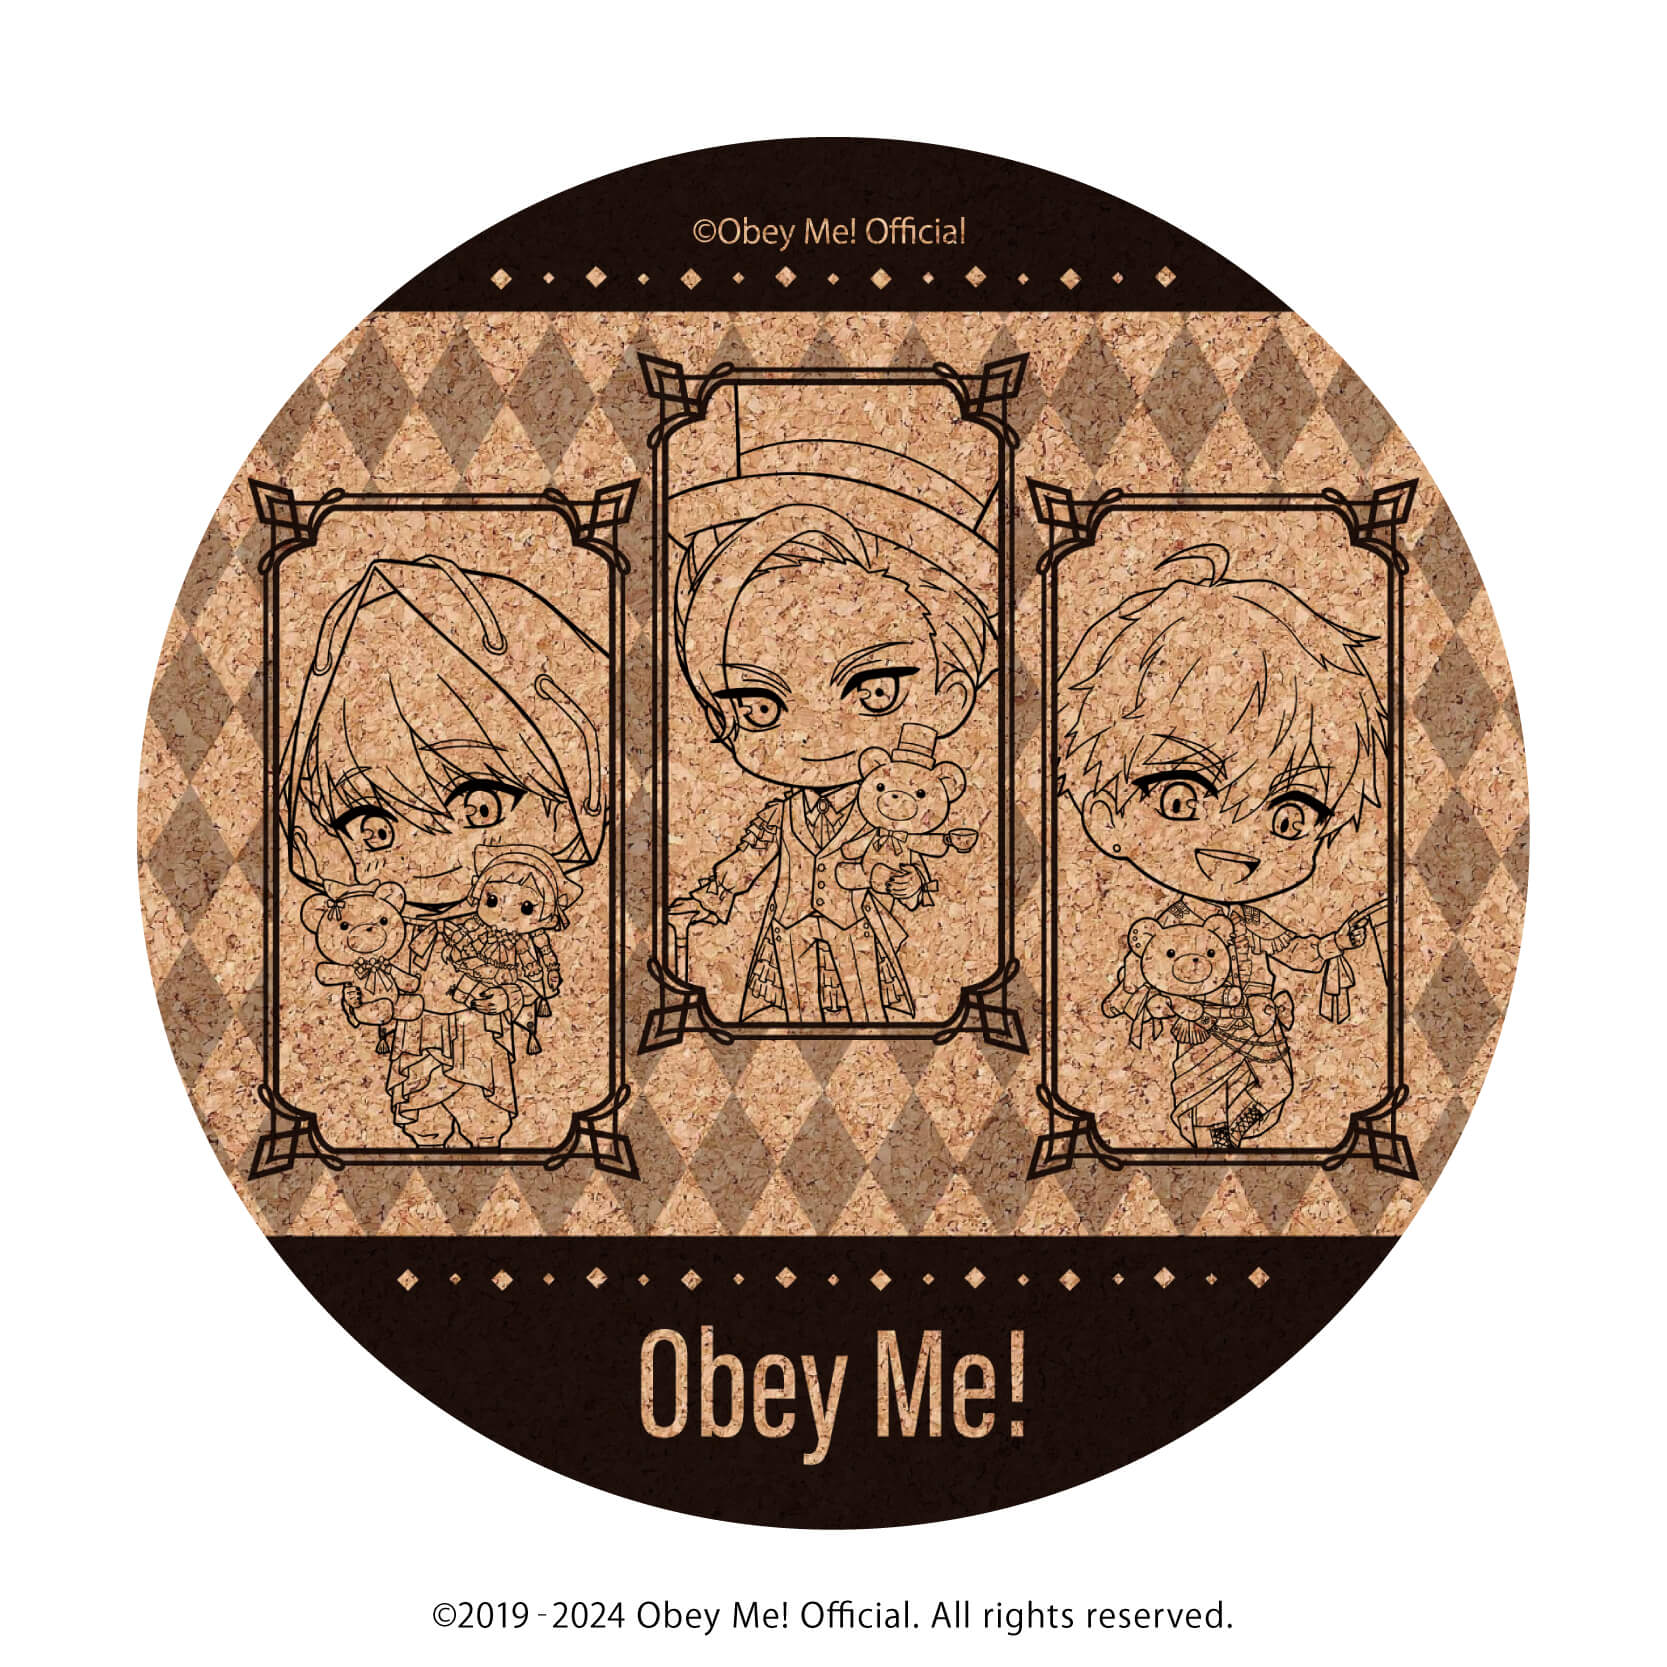 コルクコースター「Obey Me!」03/ルシファー&マモン&レヴィアタン バレンタインver.(ミニキャライラスト)